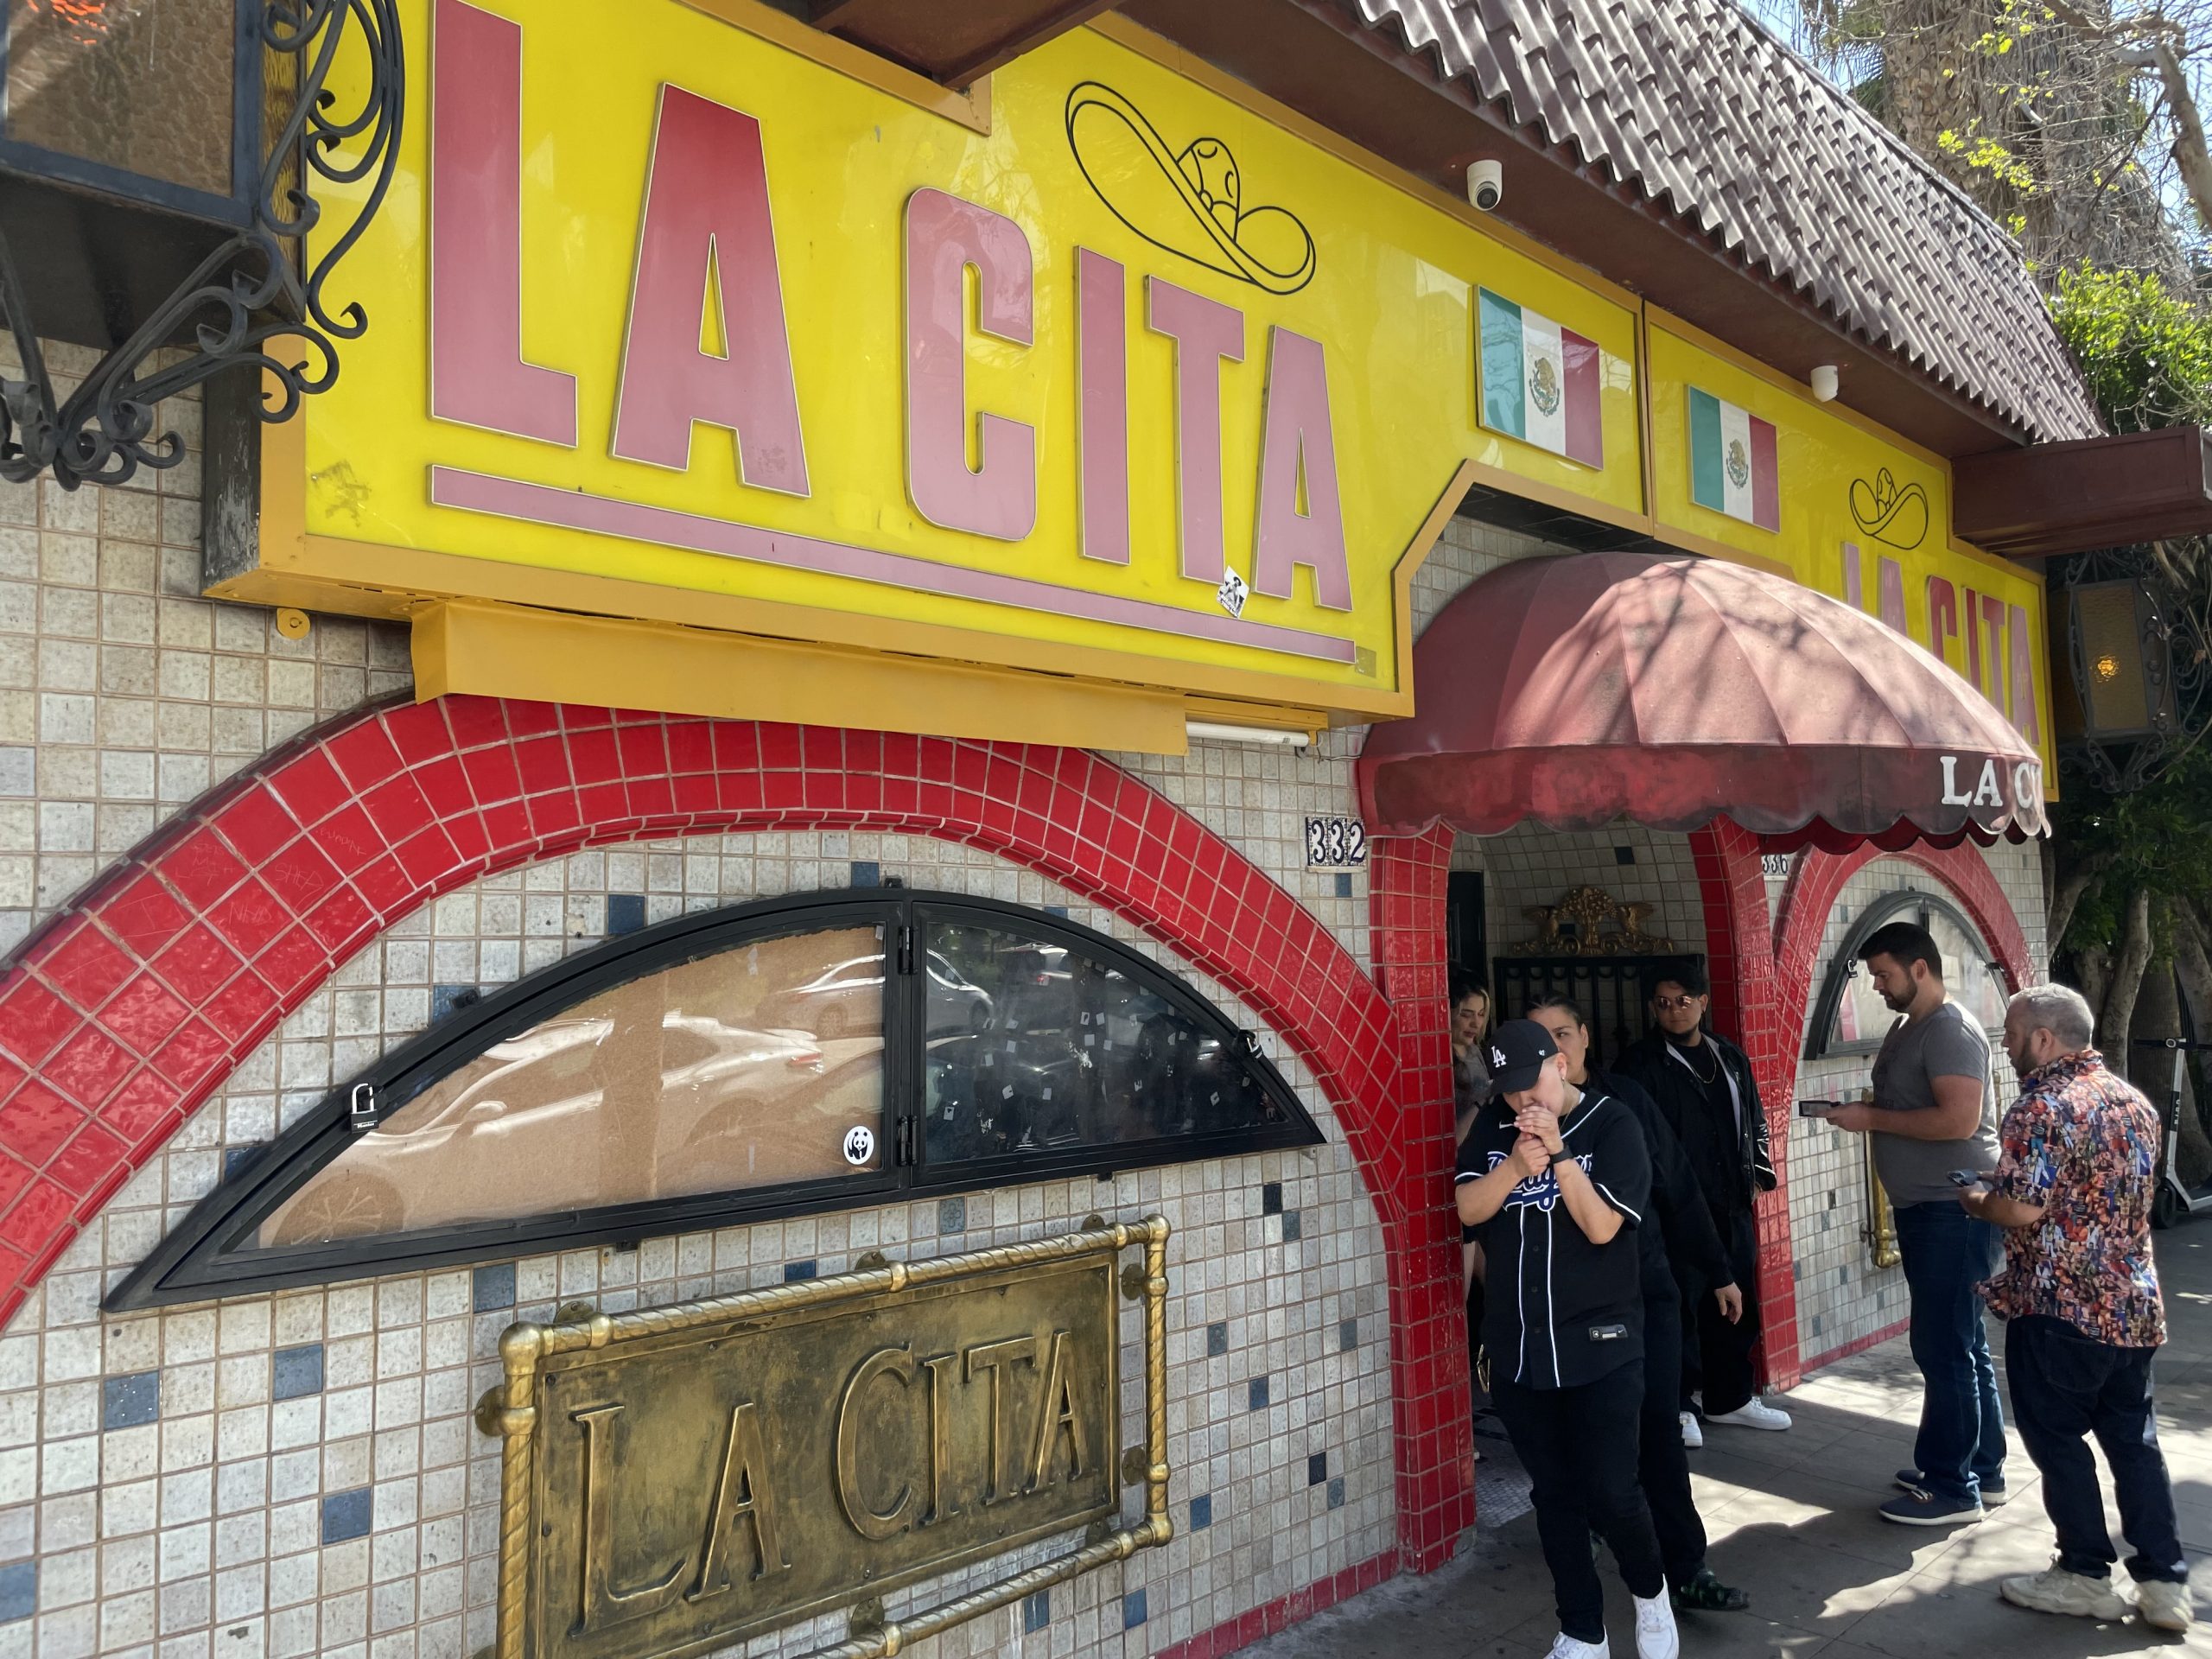 La Cita Bar - Los Angeles Dive Bar - Exterior